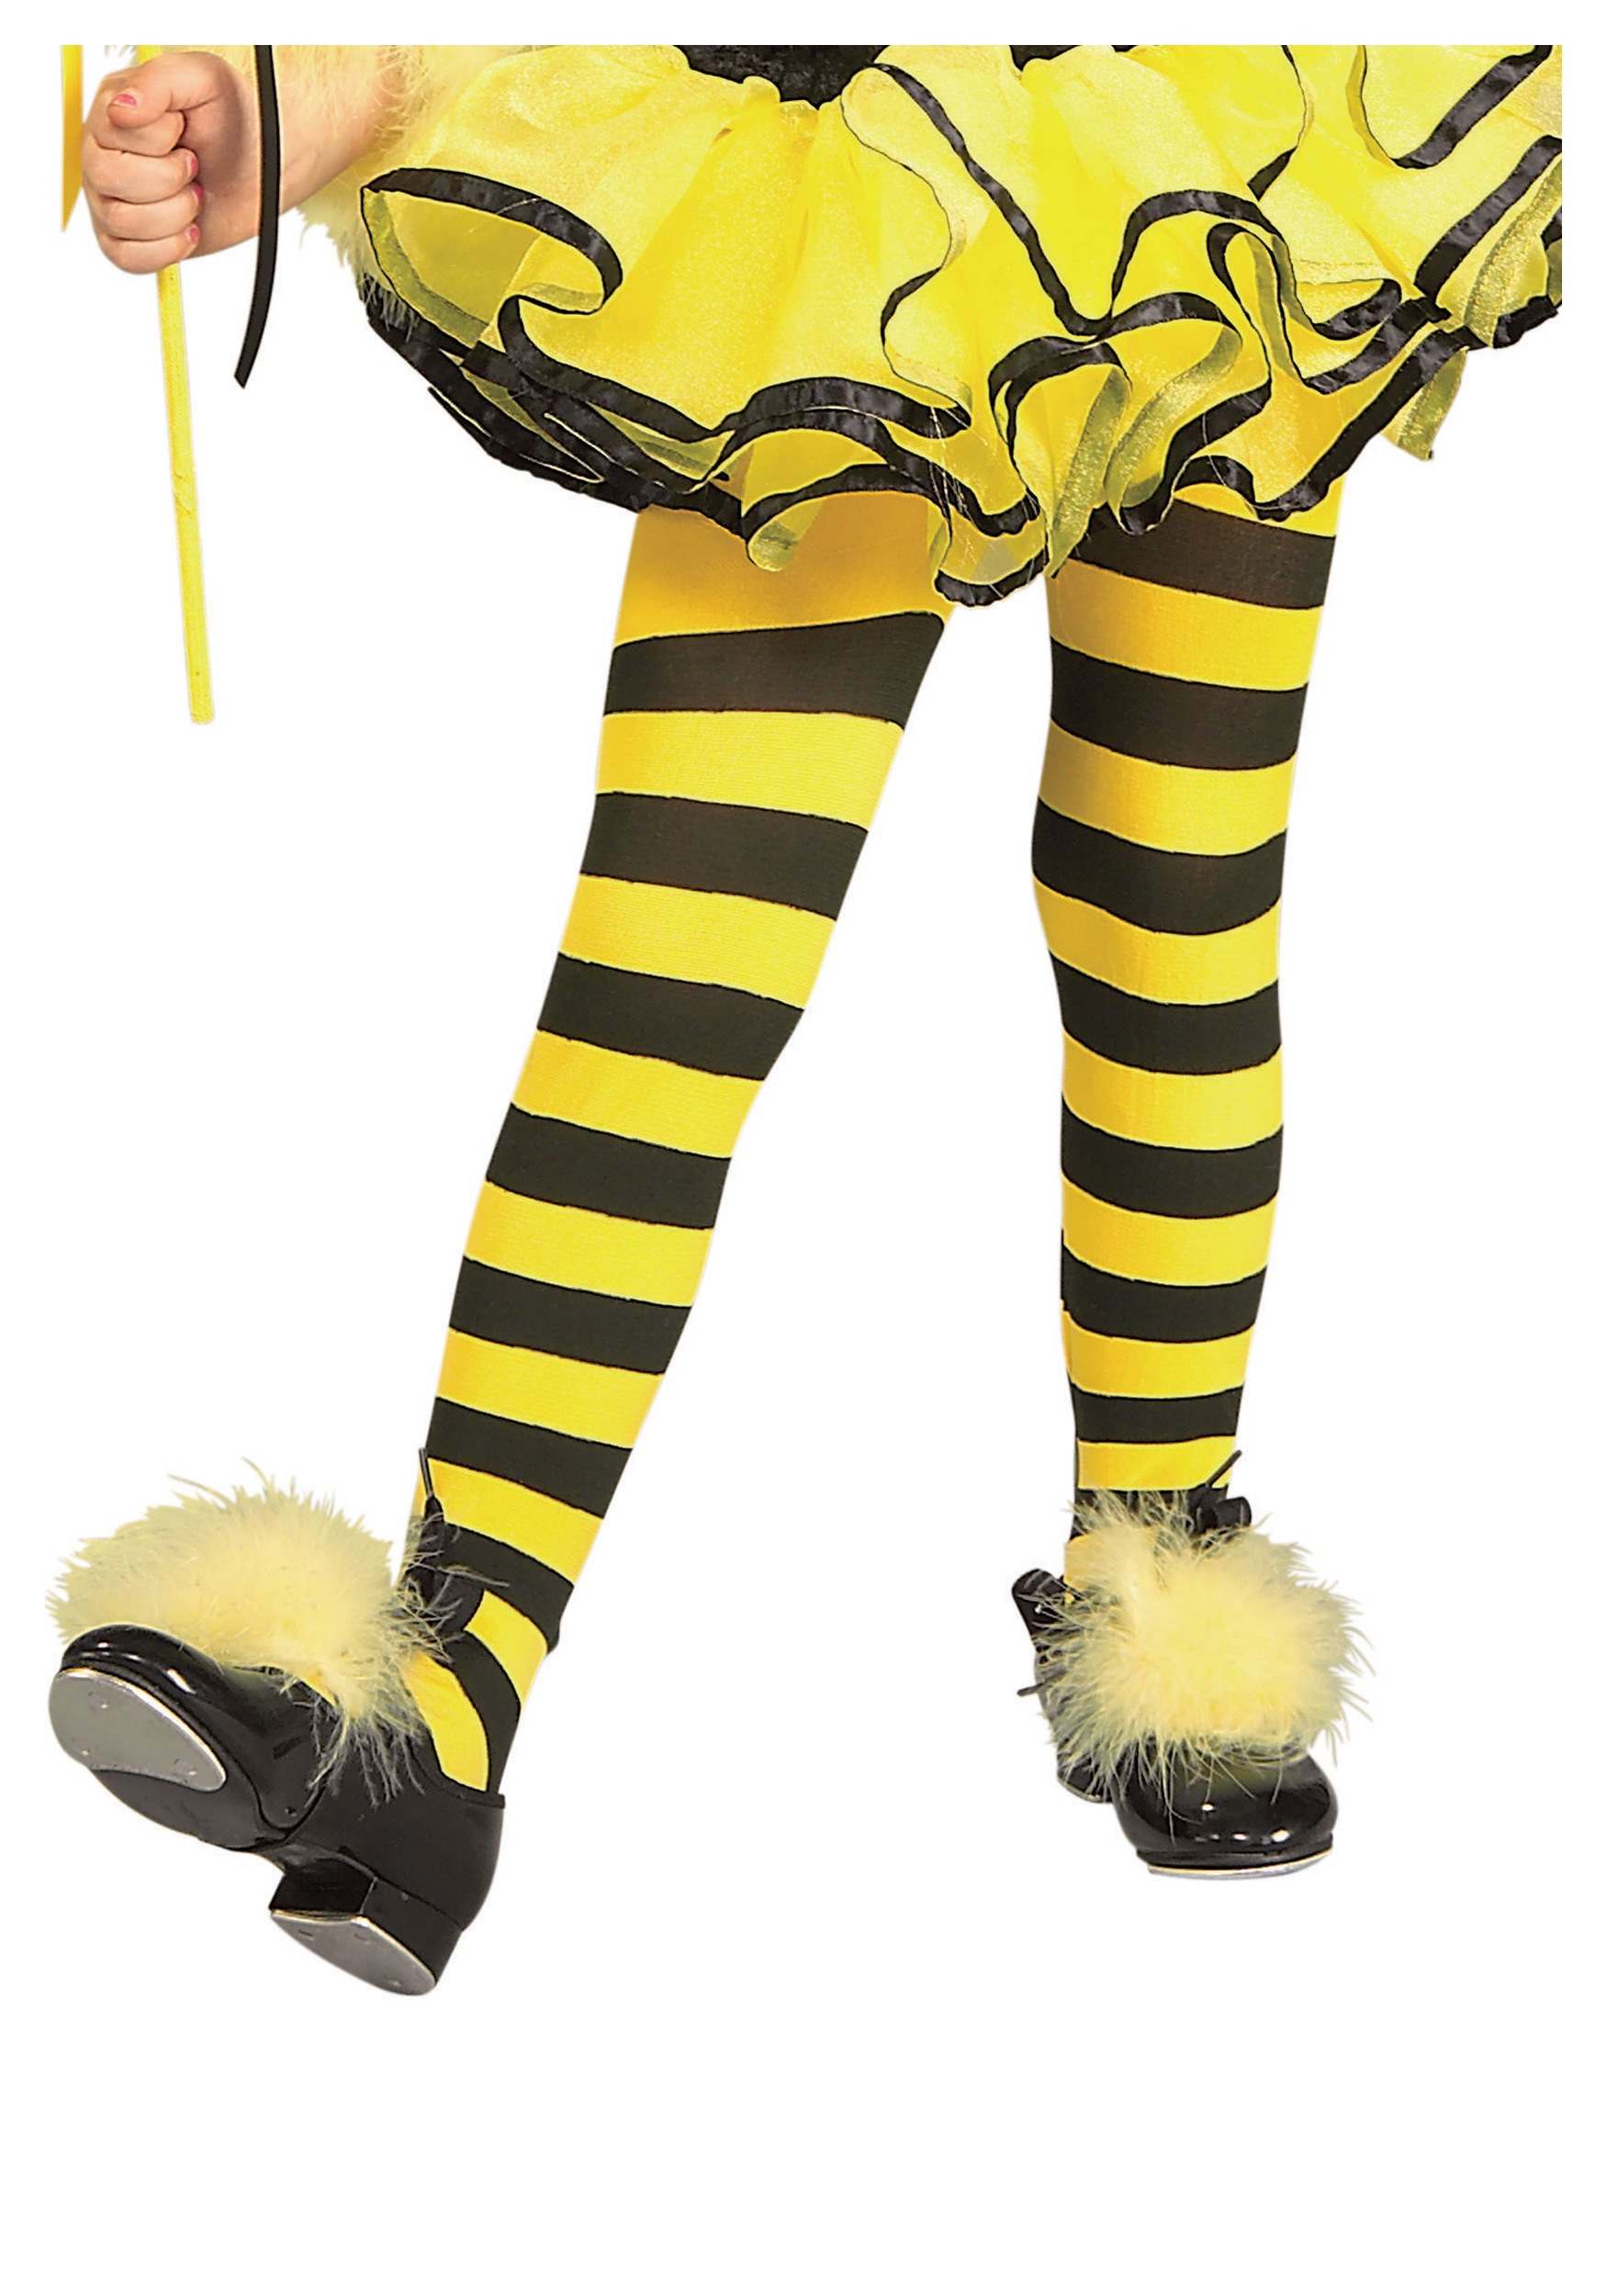 Buy Bumble Bee Costume Leggings, Halloween Costume, Black Yellow